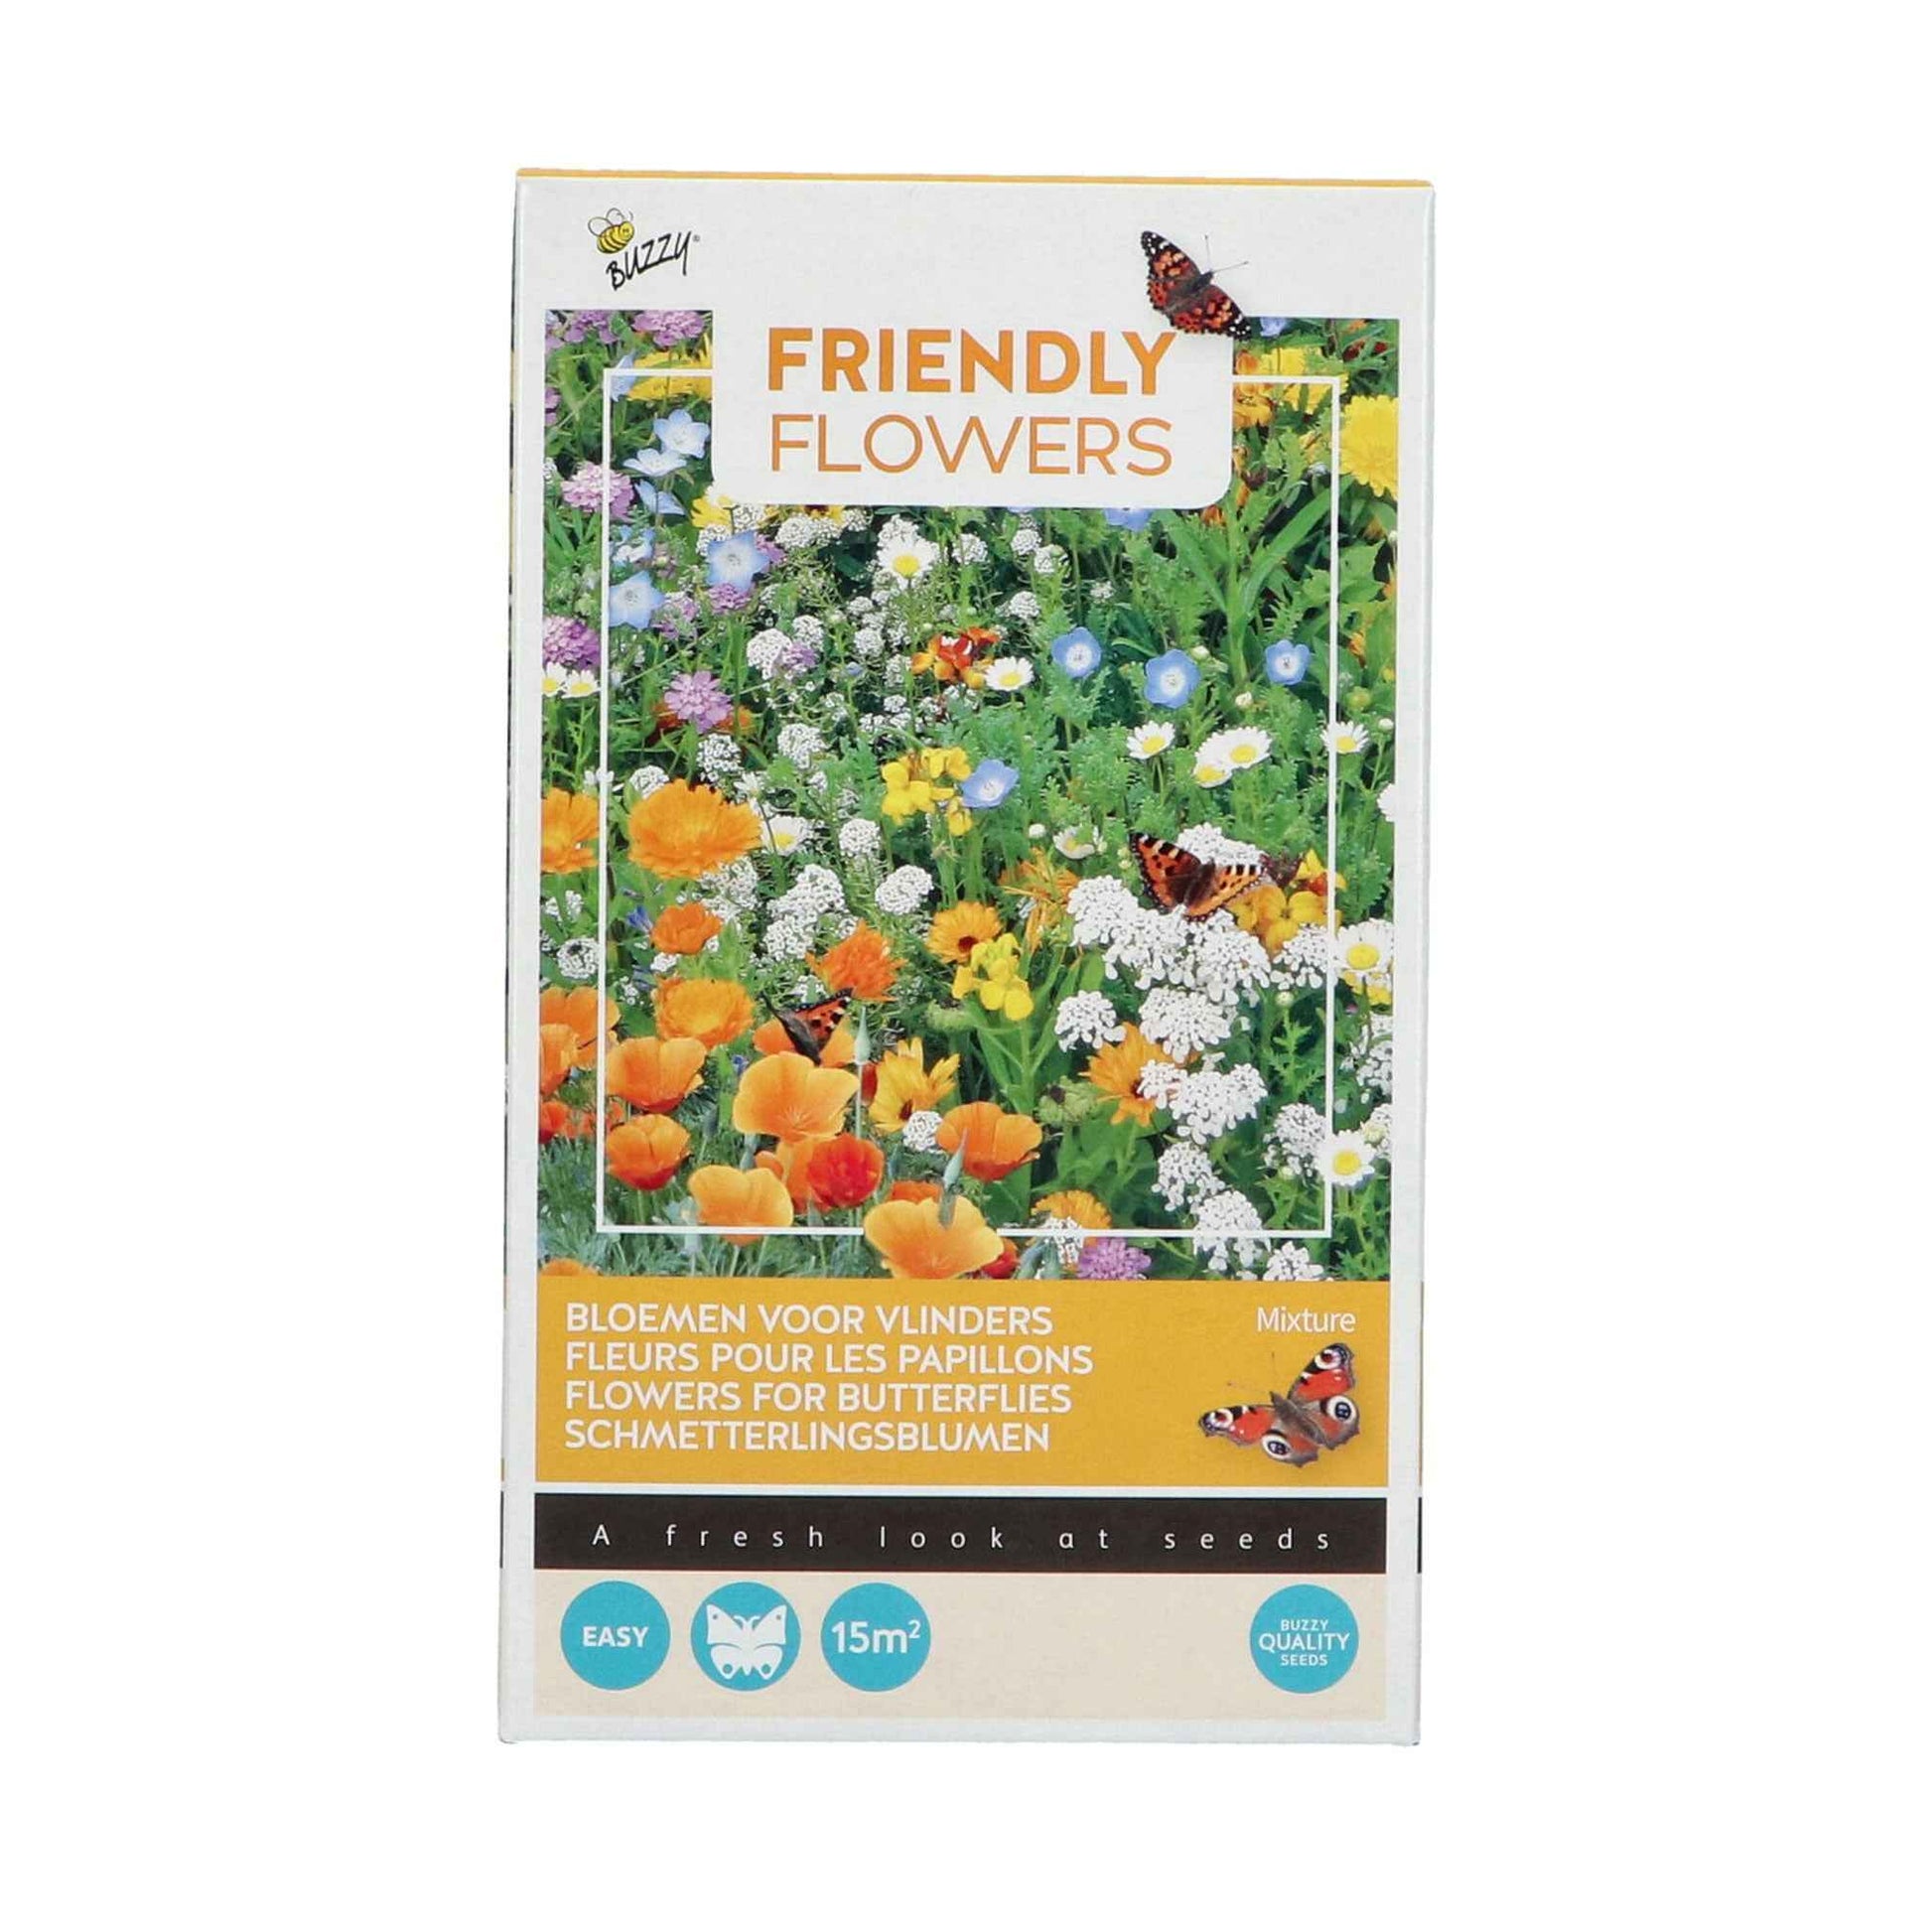 Schmetterlinganziehende Blumen - Friendly Flowers Mischung inkl. Granulat - Blumensamen - Bienen- und schmetterlingsfreundliche Pflanzen